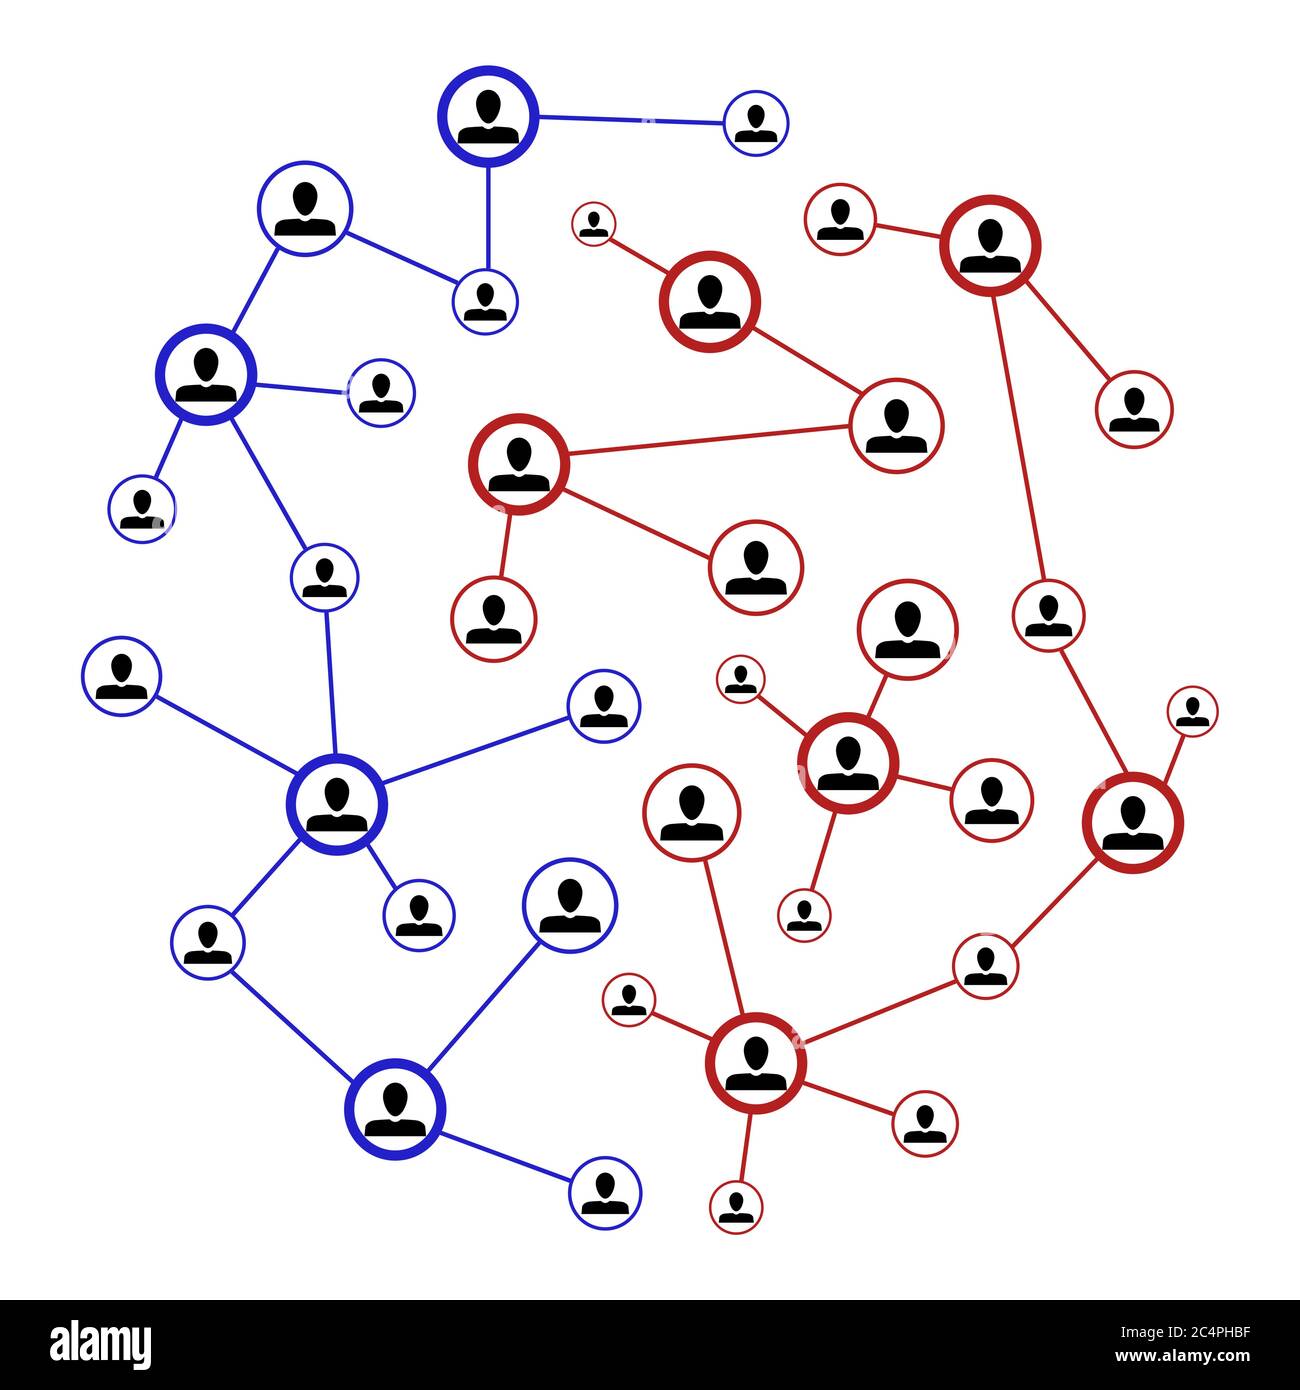 Business di Connection network, comunità sociale globale di Internet. Illustrazione della società web con vettore avatar umano Illustrazione Vettoriale